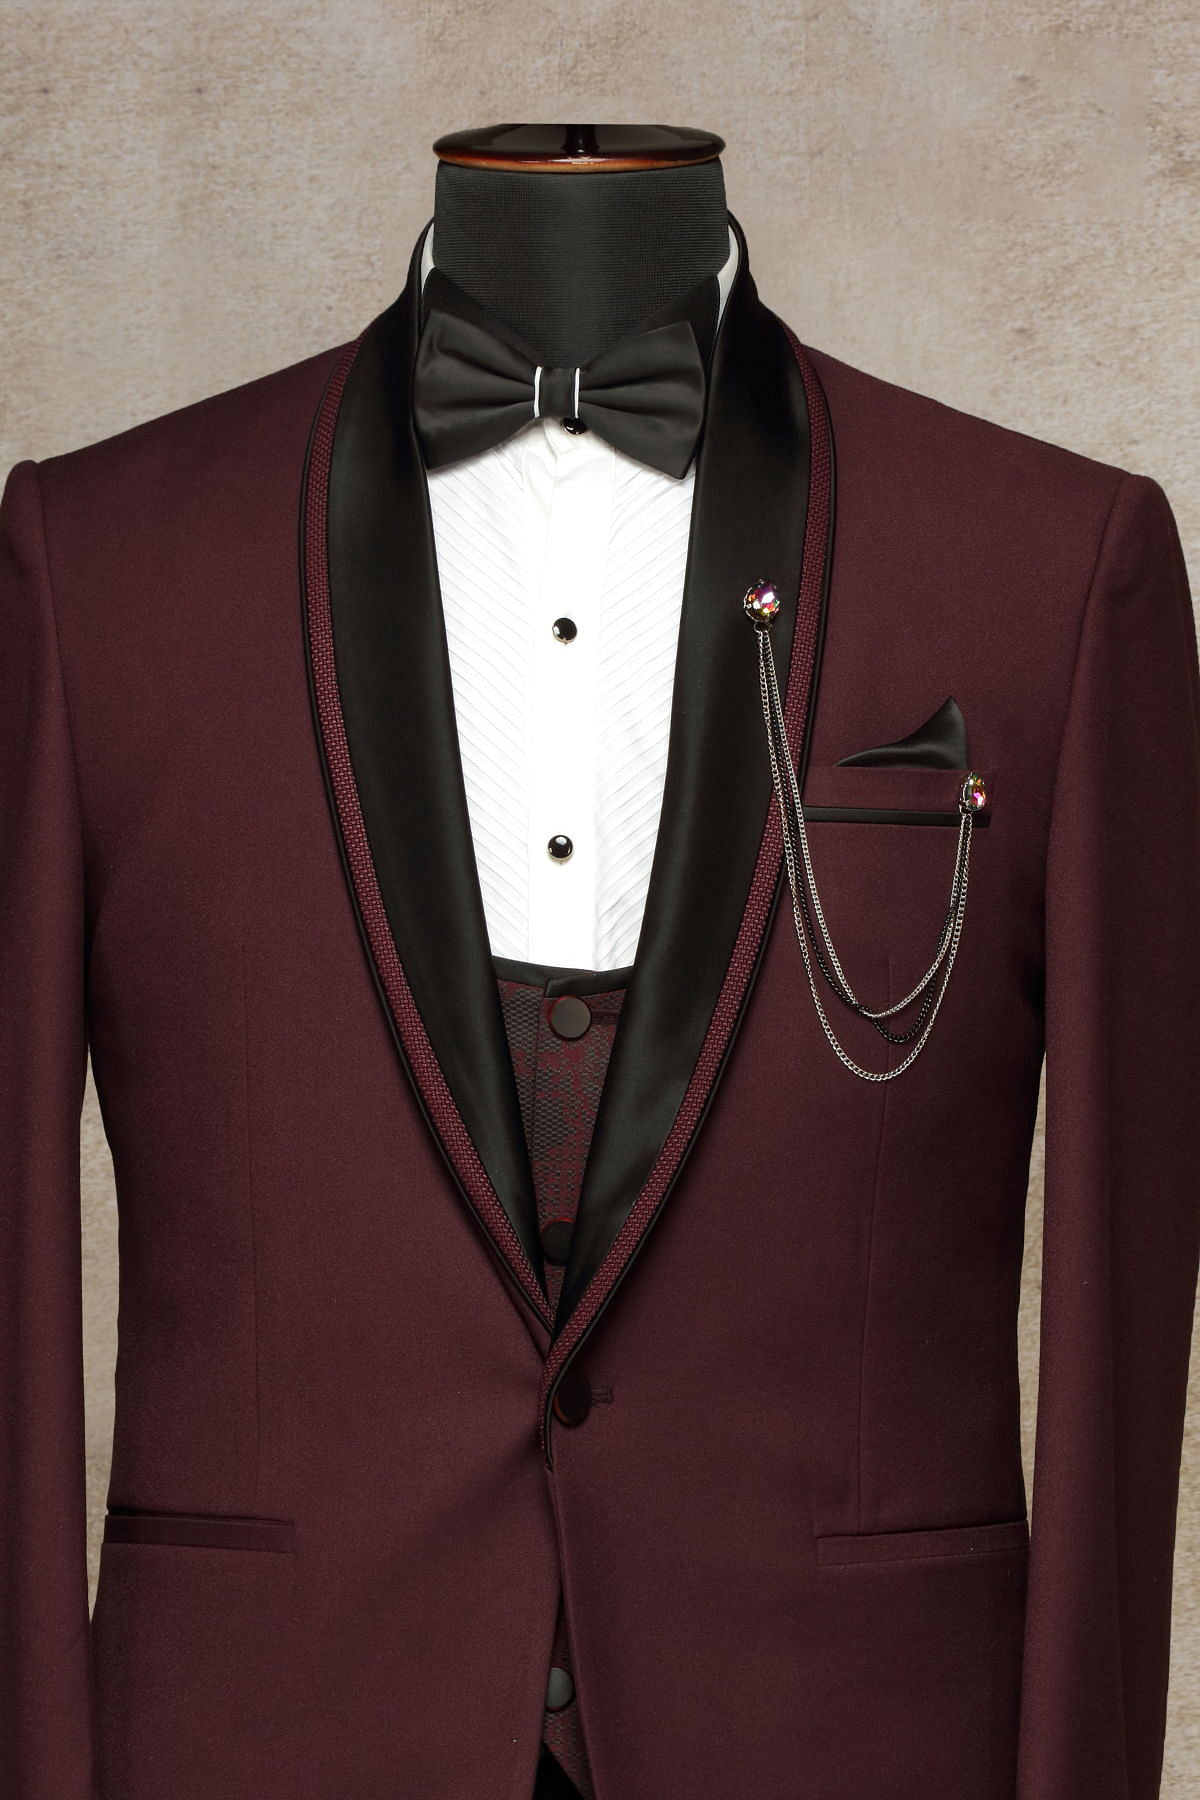 Elegant Maroon Groom Suit with Black Bow Tie